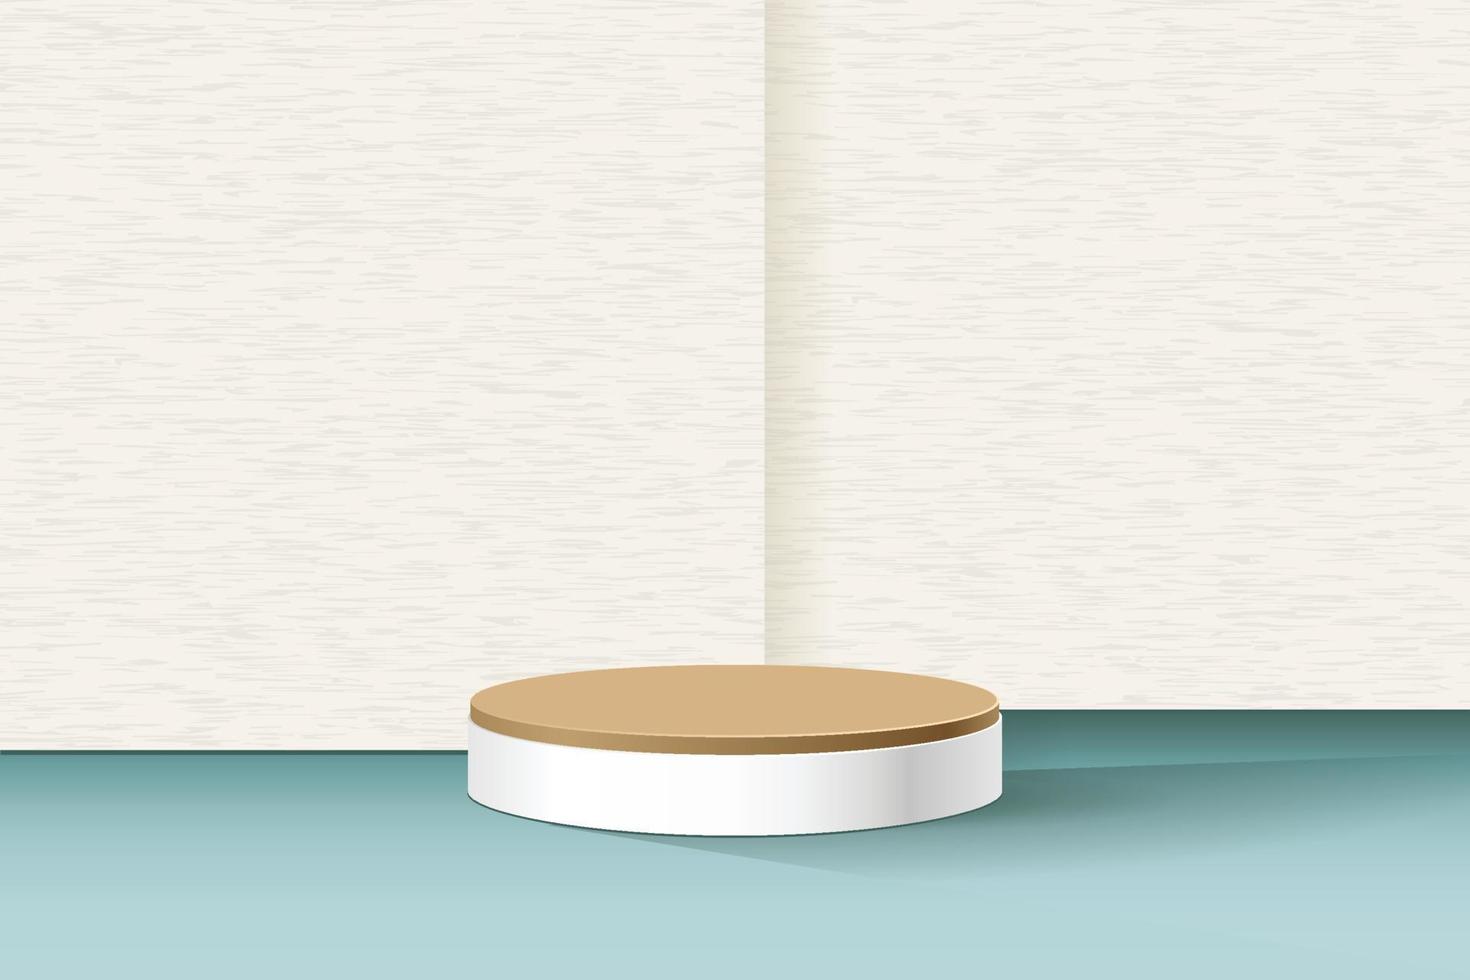 plantilla de pantalla de presentación en blanco de escena de fondo de pared con textura crema con piso turquesa y podio de pedestal redondo para productos de baño y belleza. ilustración vectorial vector